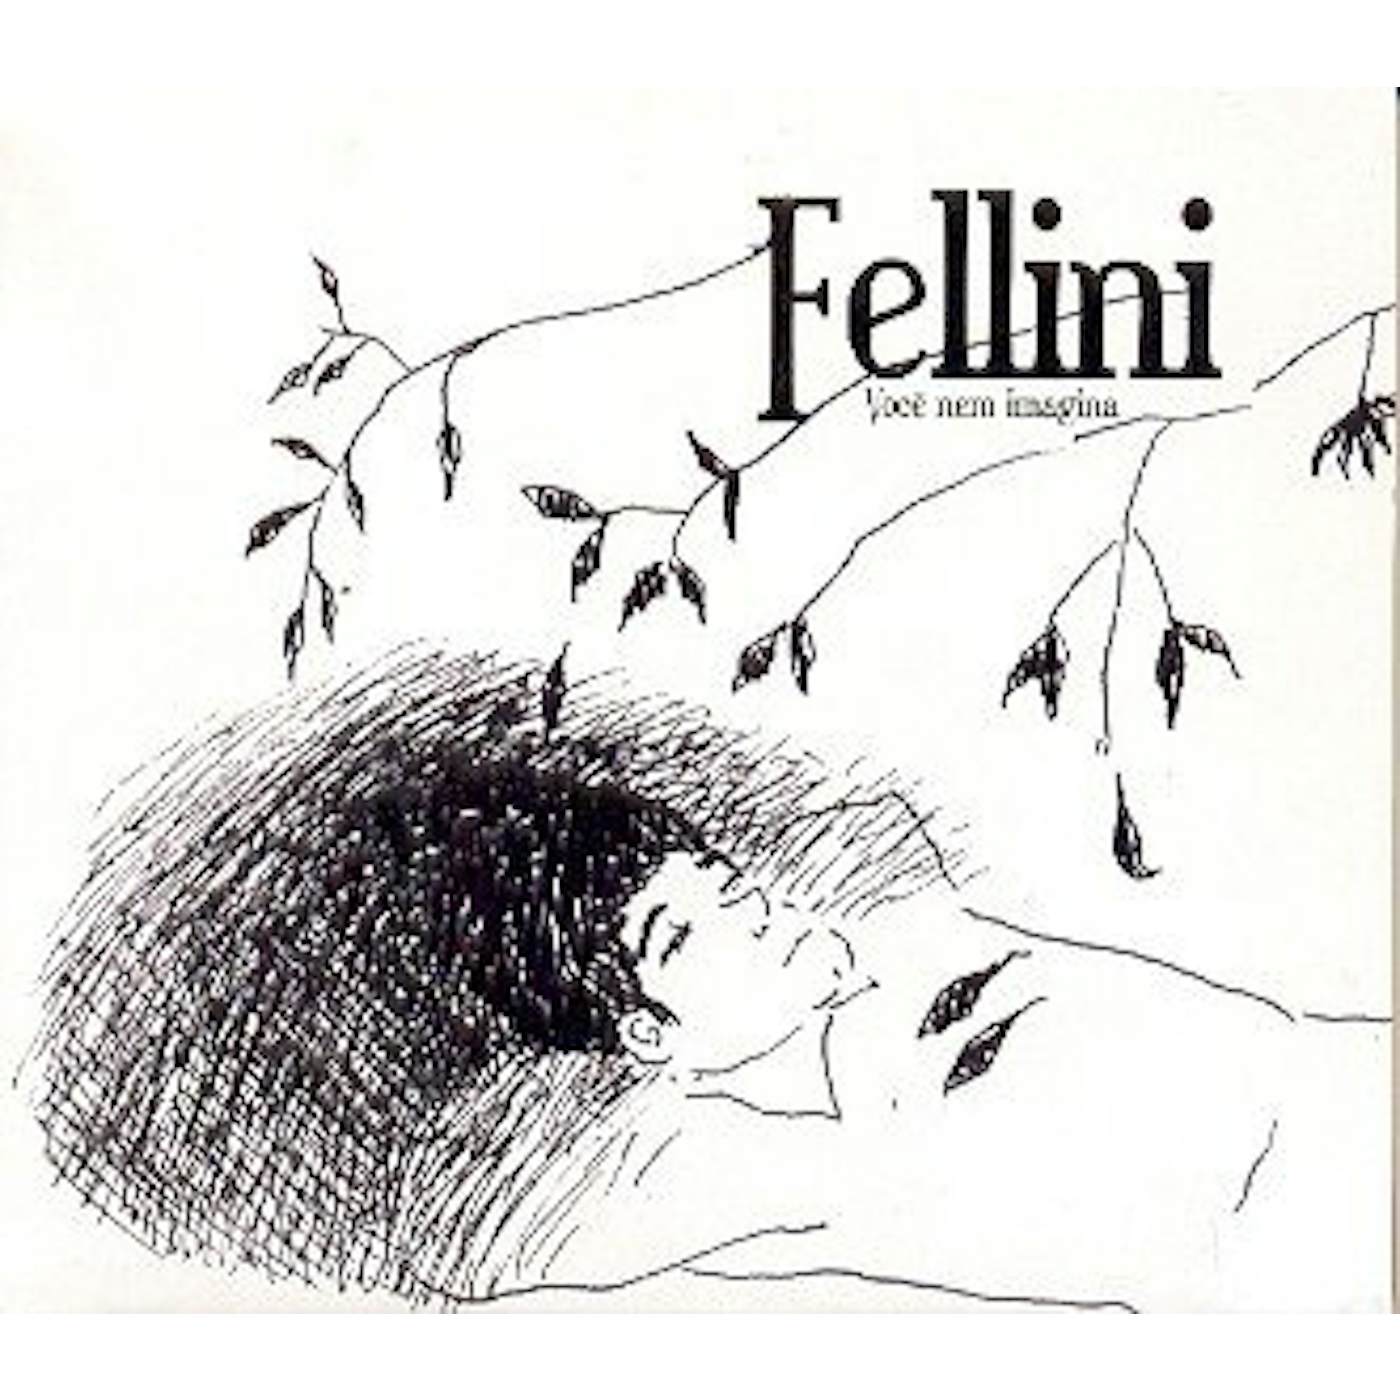 Fellini VOCE NEM IMAGINA CD